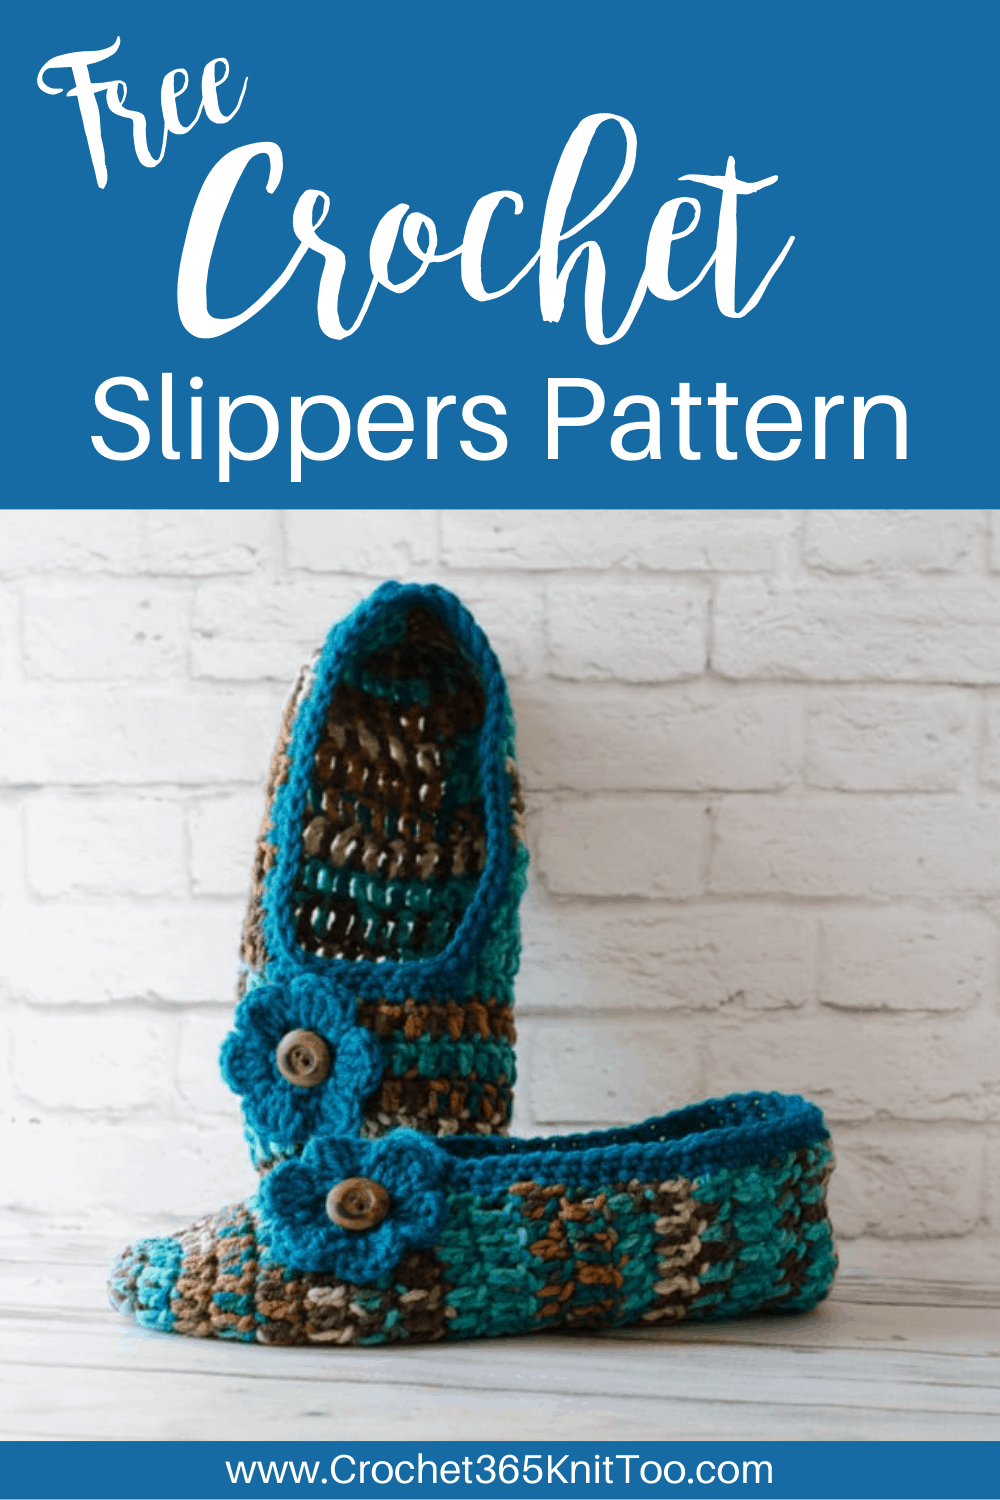 Not Your Grandma's Crochet Slippers - Crochet 365 Knit Too